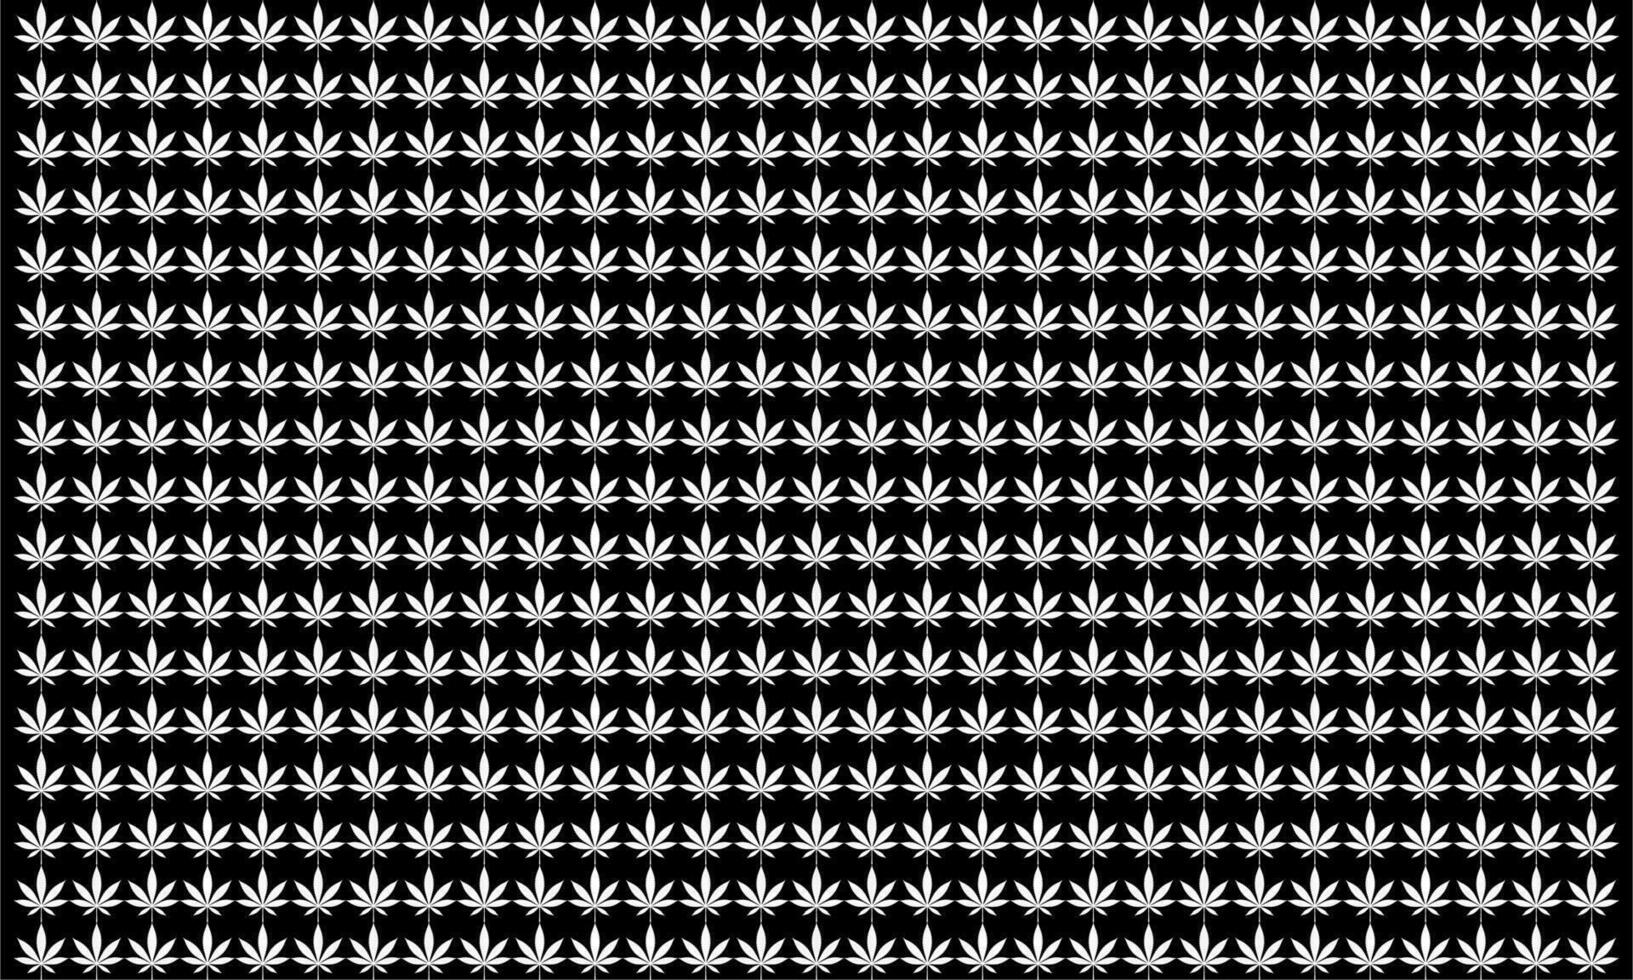 cannabis folha silhueta motivos padrão, pode usar para decoração, ornamentado, papel de parede, pano de fundo, têxtil. moda, tecido, telha, chão, cobrir, invólucro, etc. vetor ilustração